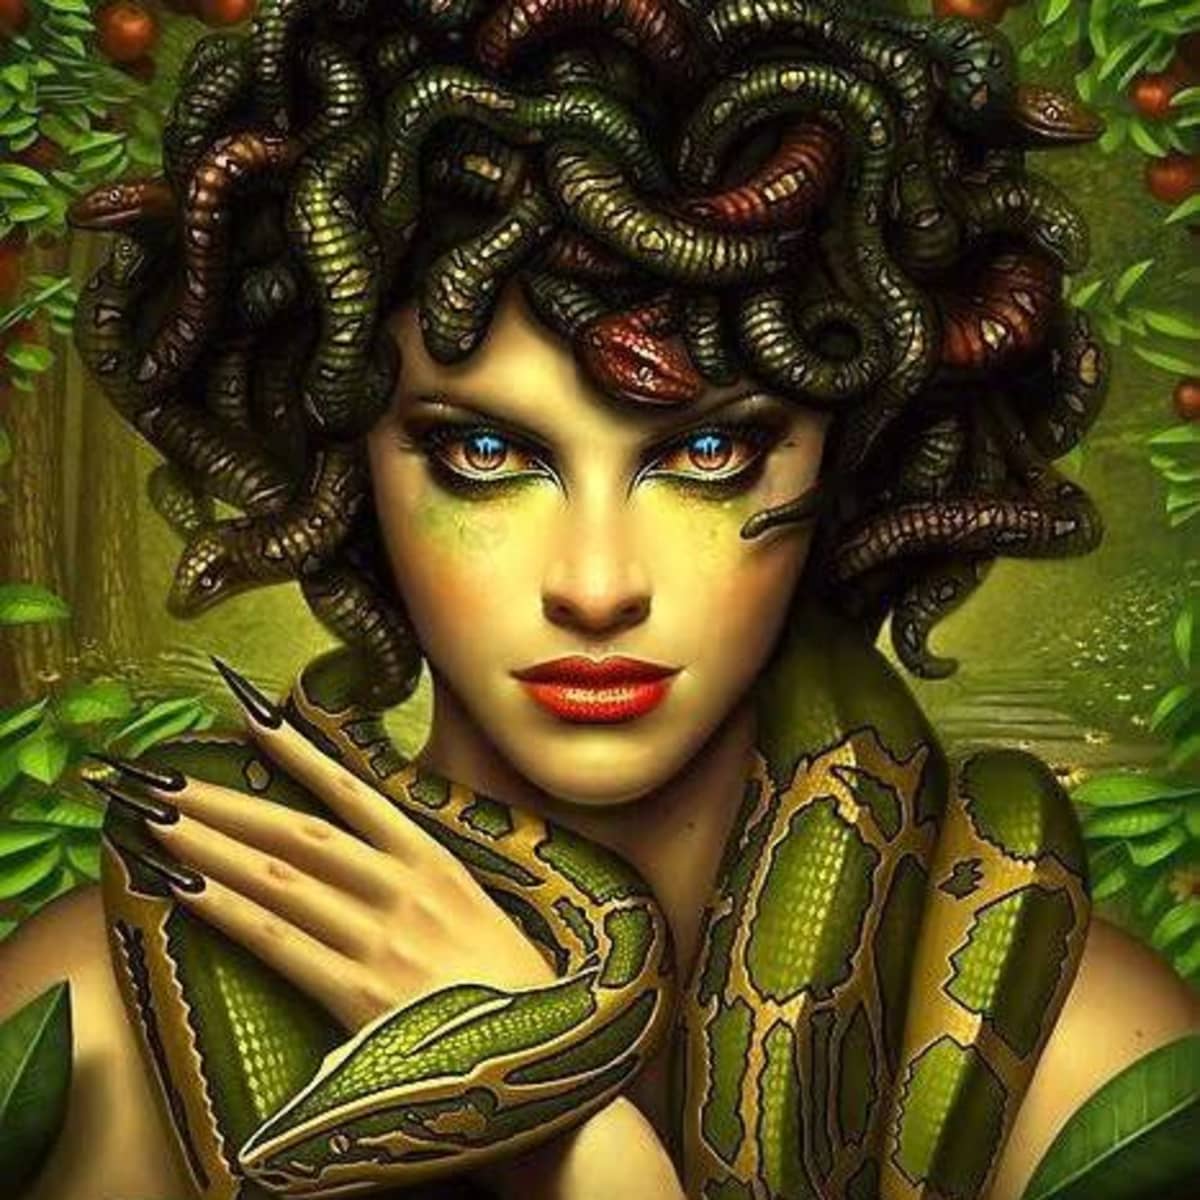 Greek Gorgon Sisters Goddess Medusa With Wild Snake Hair And LED